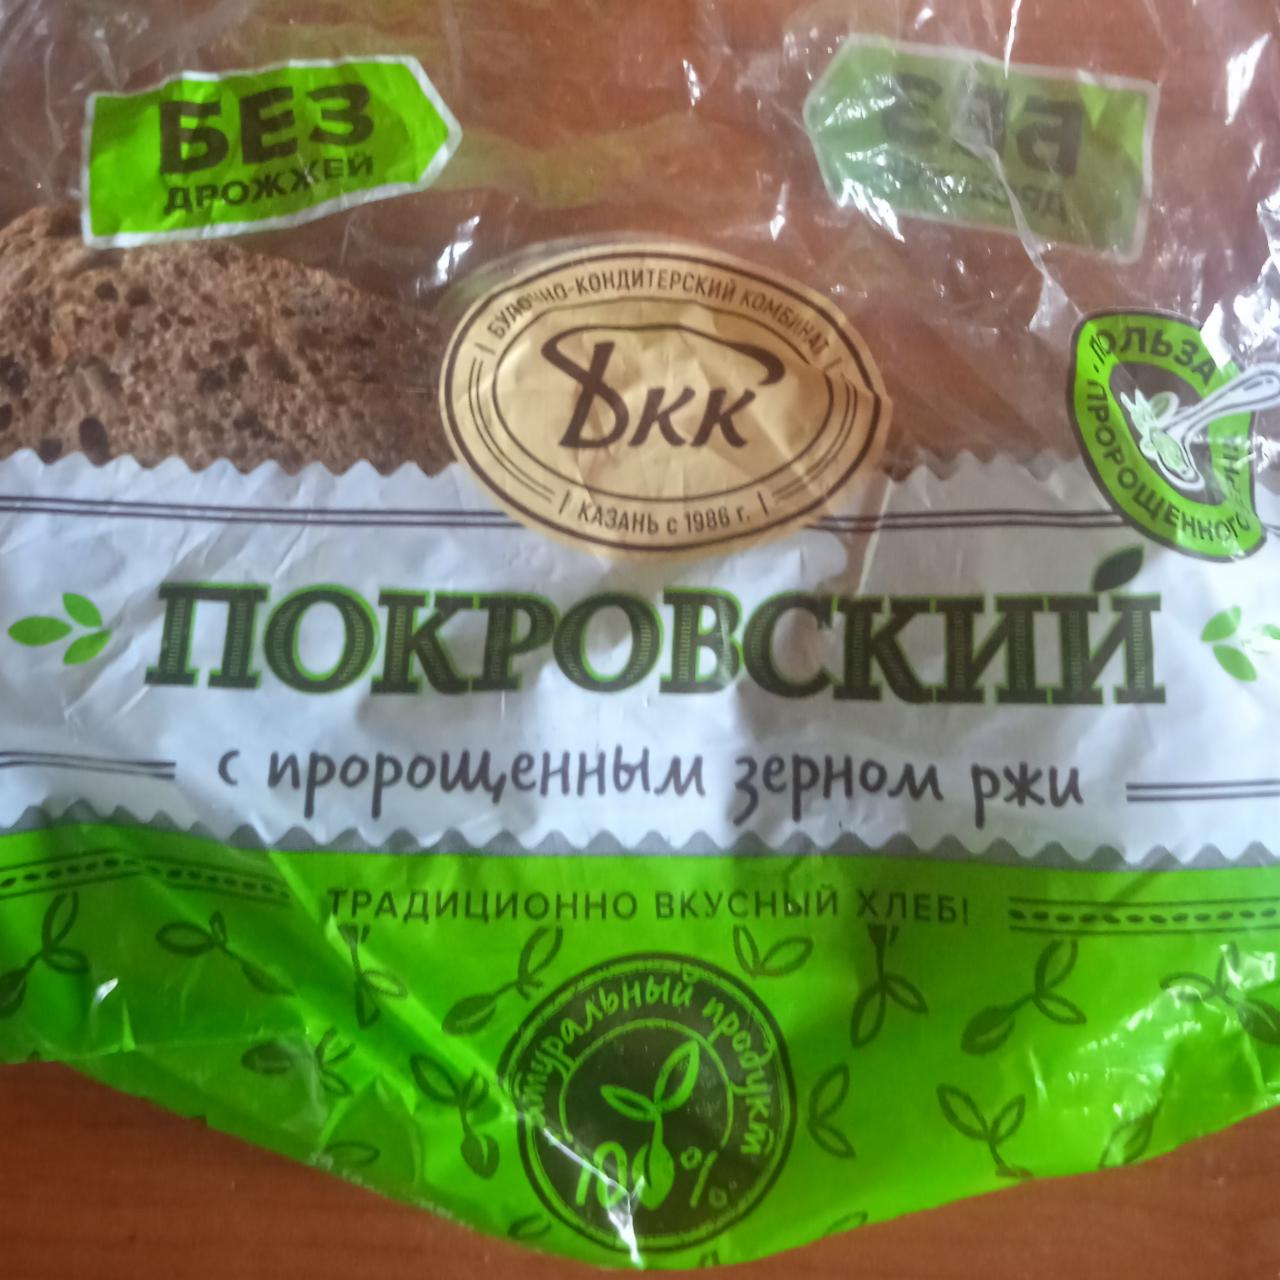 Фото - хлеб Покровский с пророщенным зерном ржи БКК